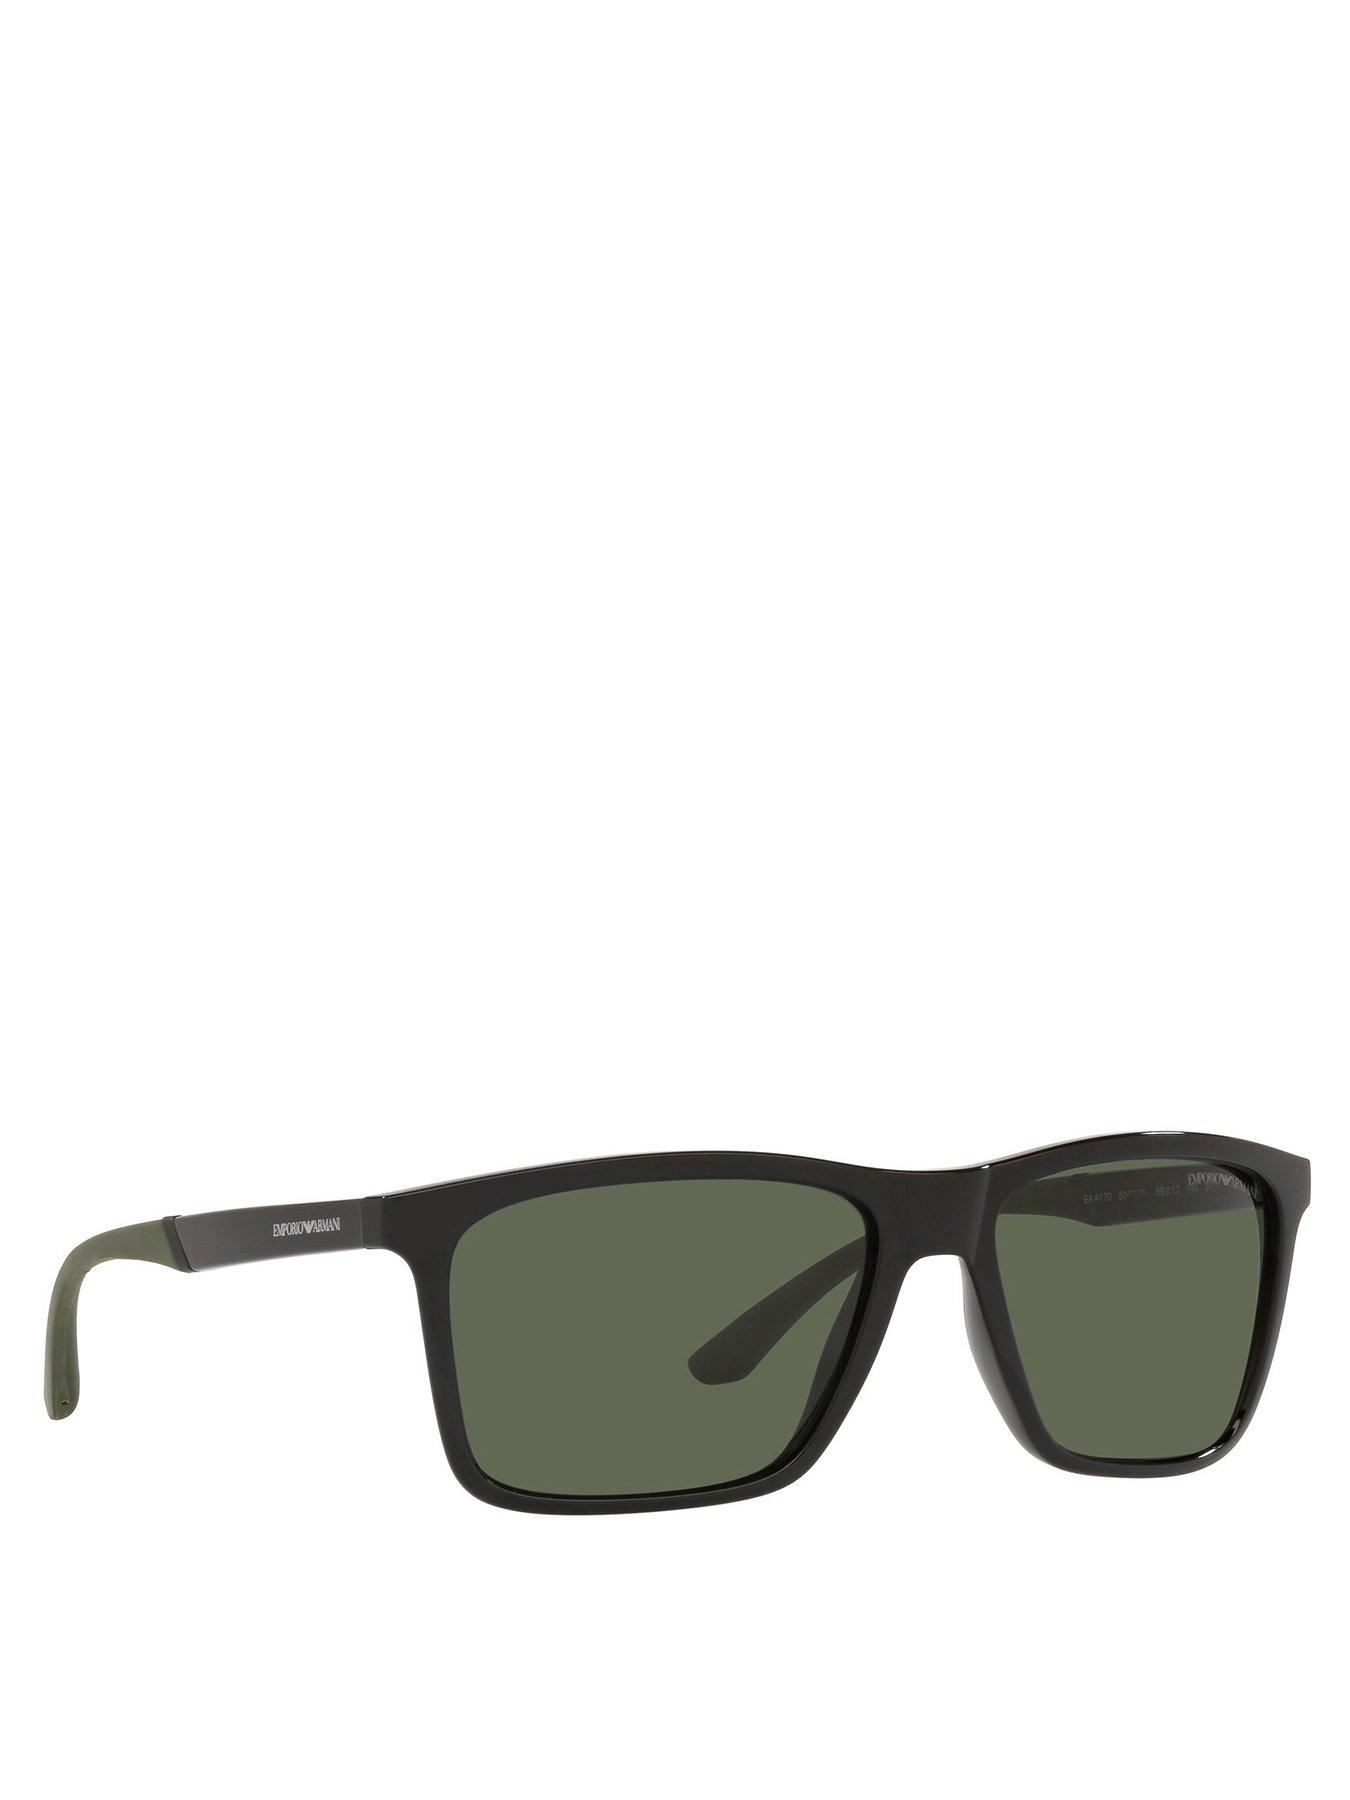 Men Green Lens Rectangular Sunglasses - Black